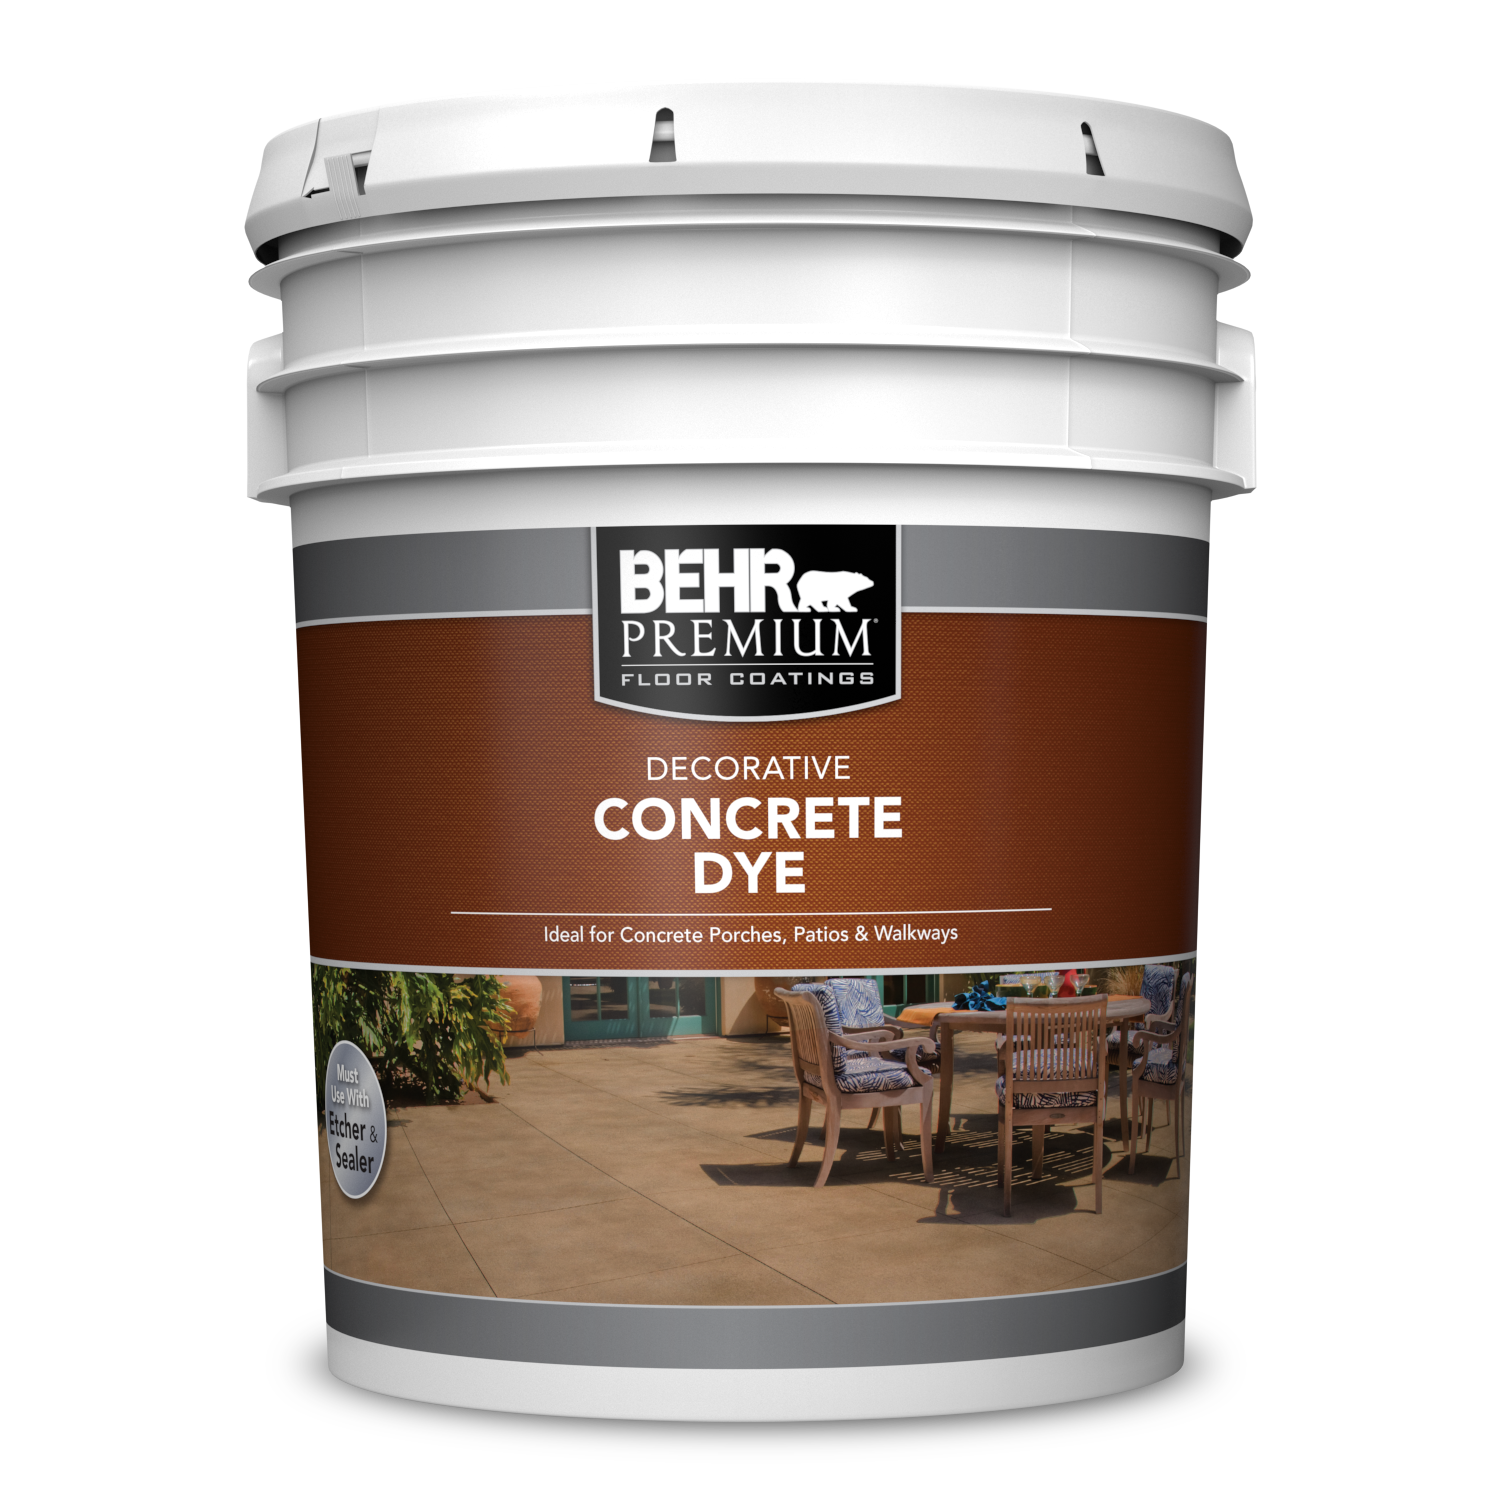 Decorative Concrete Dye | BEHR PREMIUM® | Behr